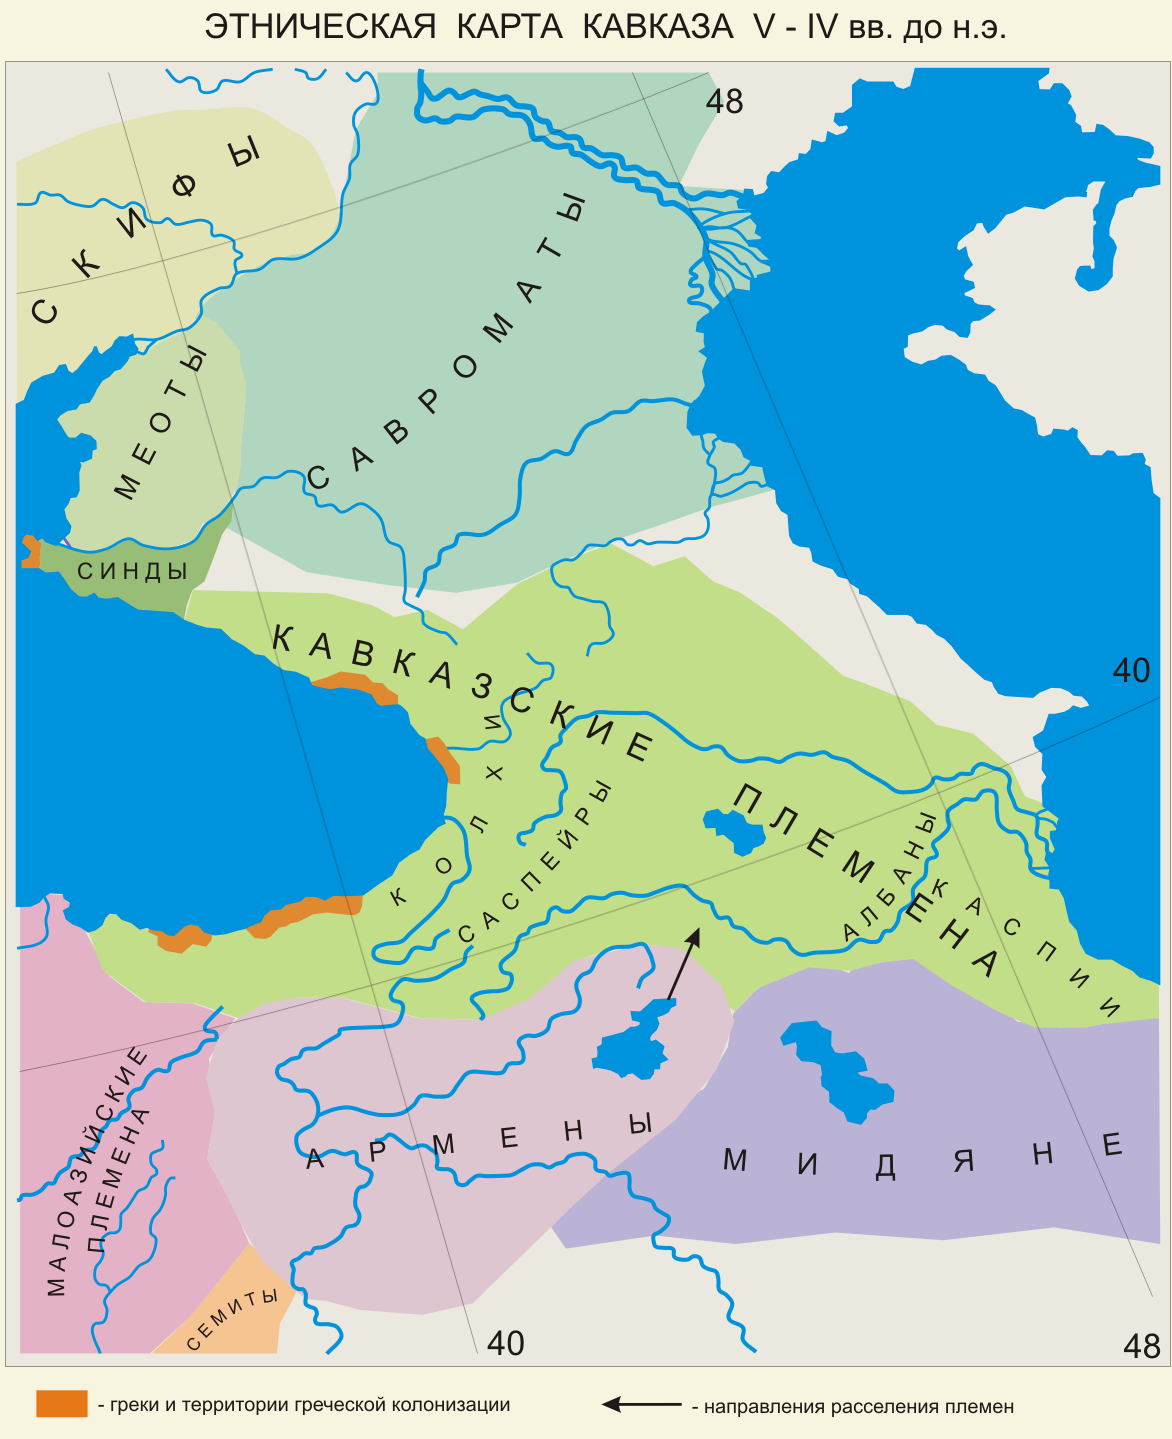 Савроматы на карте Северного Кавказа по данным археологов и письменным источникам